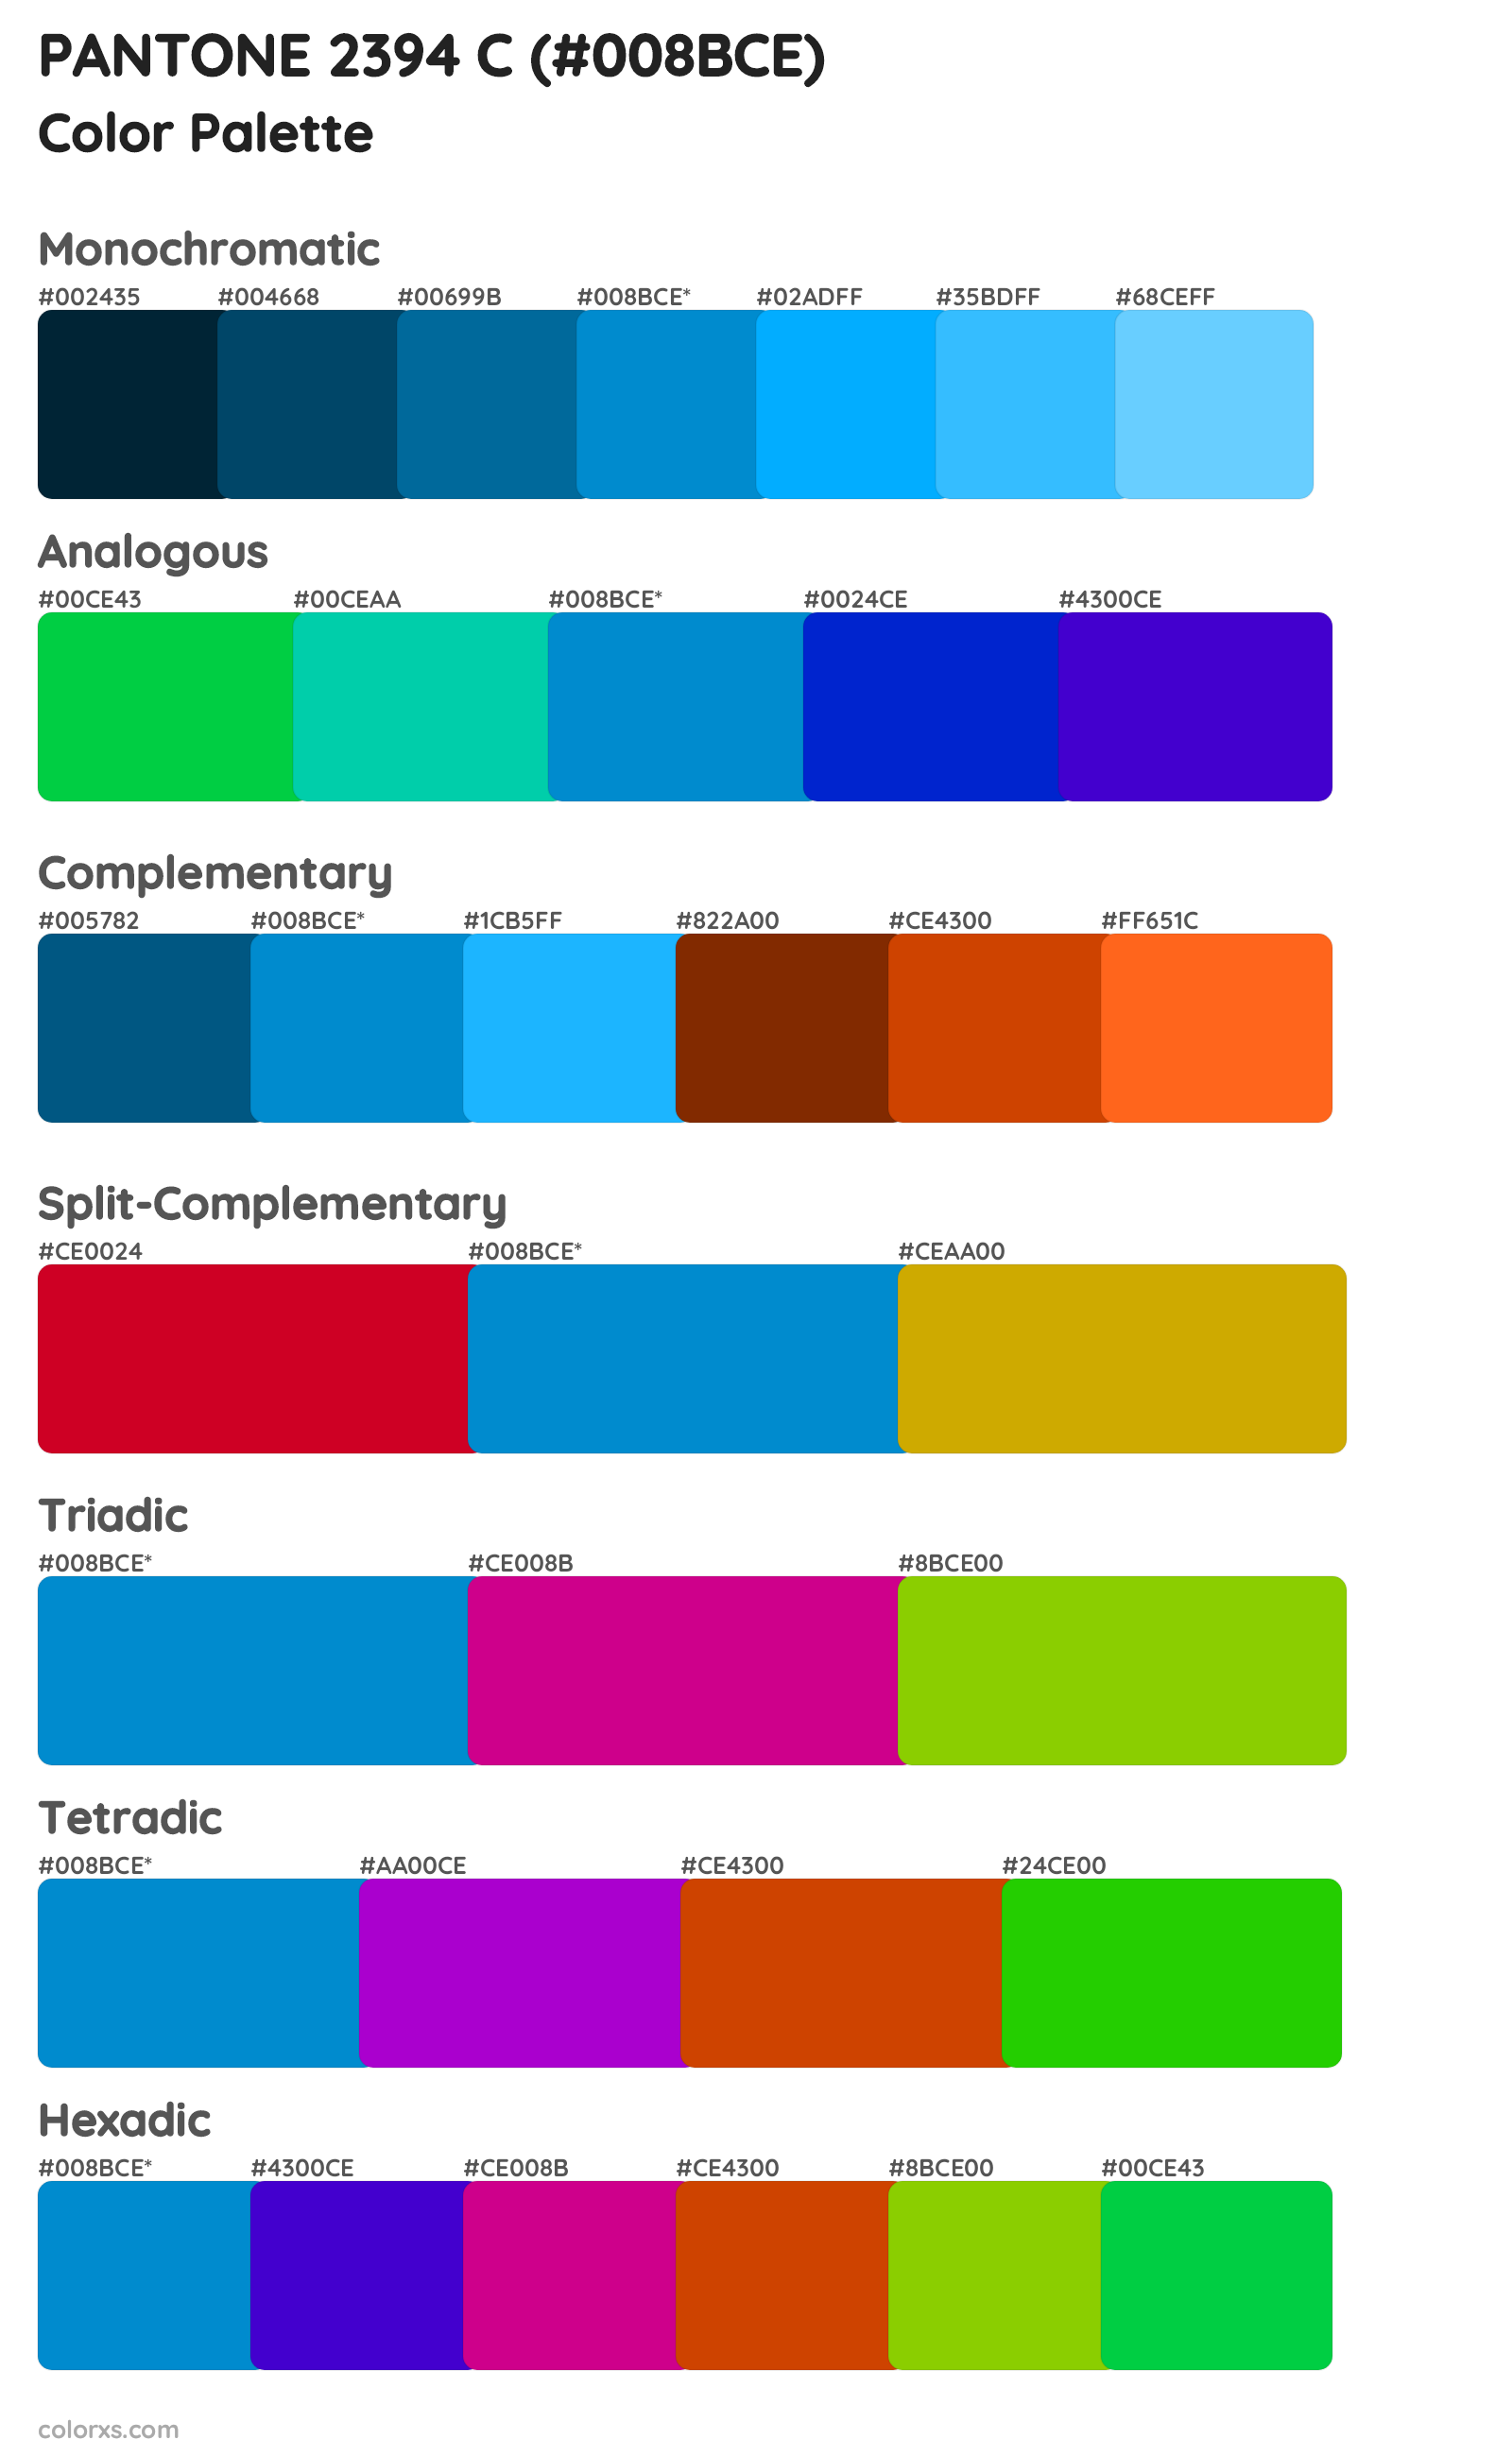 PANTONE 2394 C Color Scheme Palettes